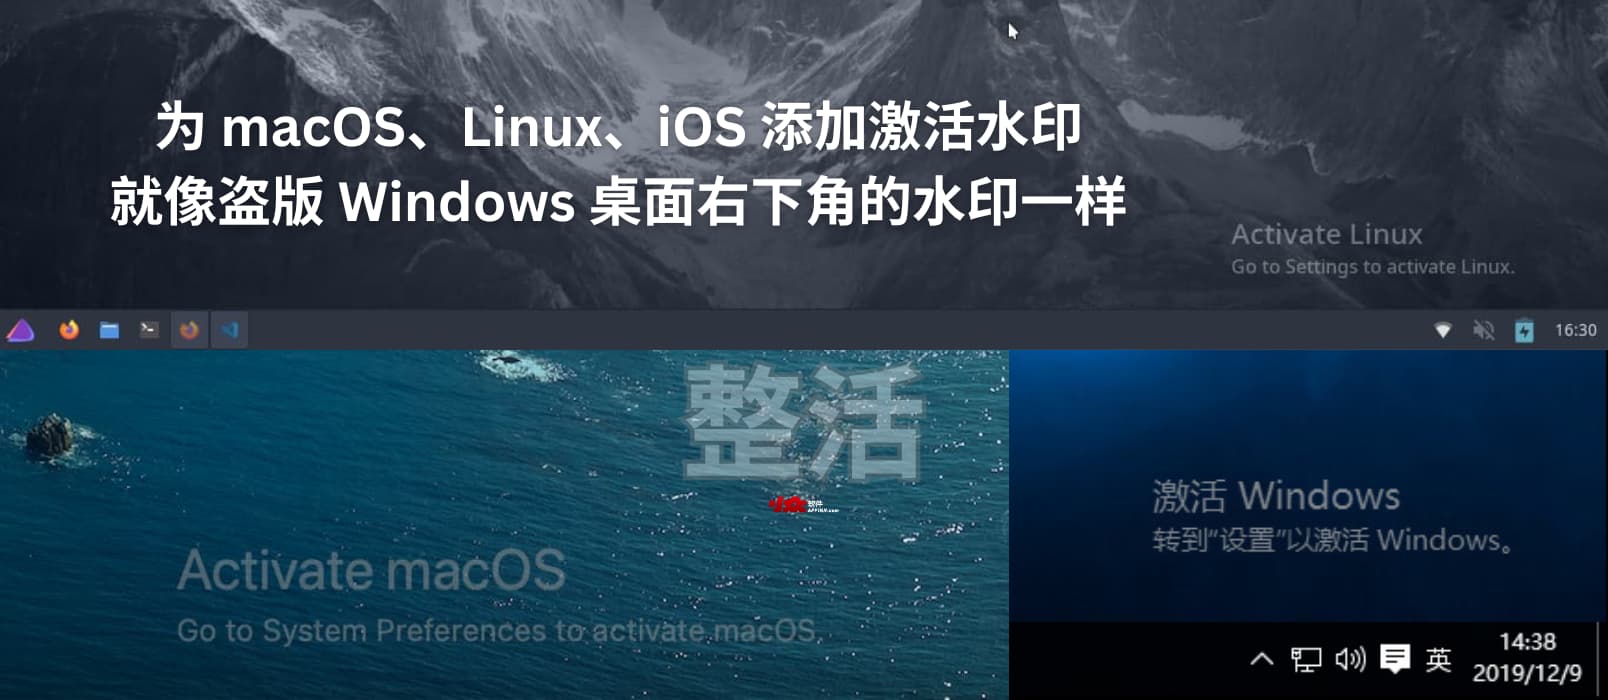 整活：为 macOS、Linux、iOS 添加激活水印，就像未激活 Windows 桌面右下角水印：激活 Windows